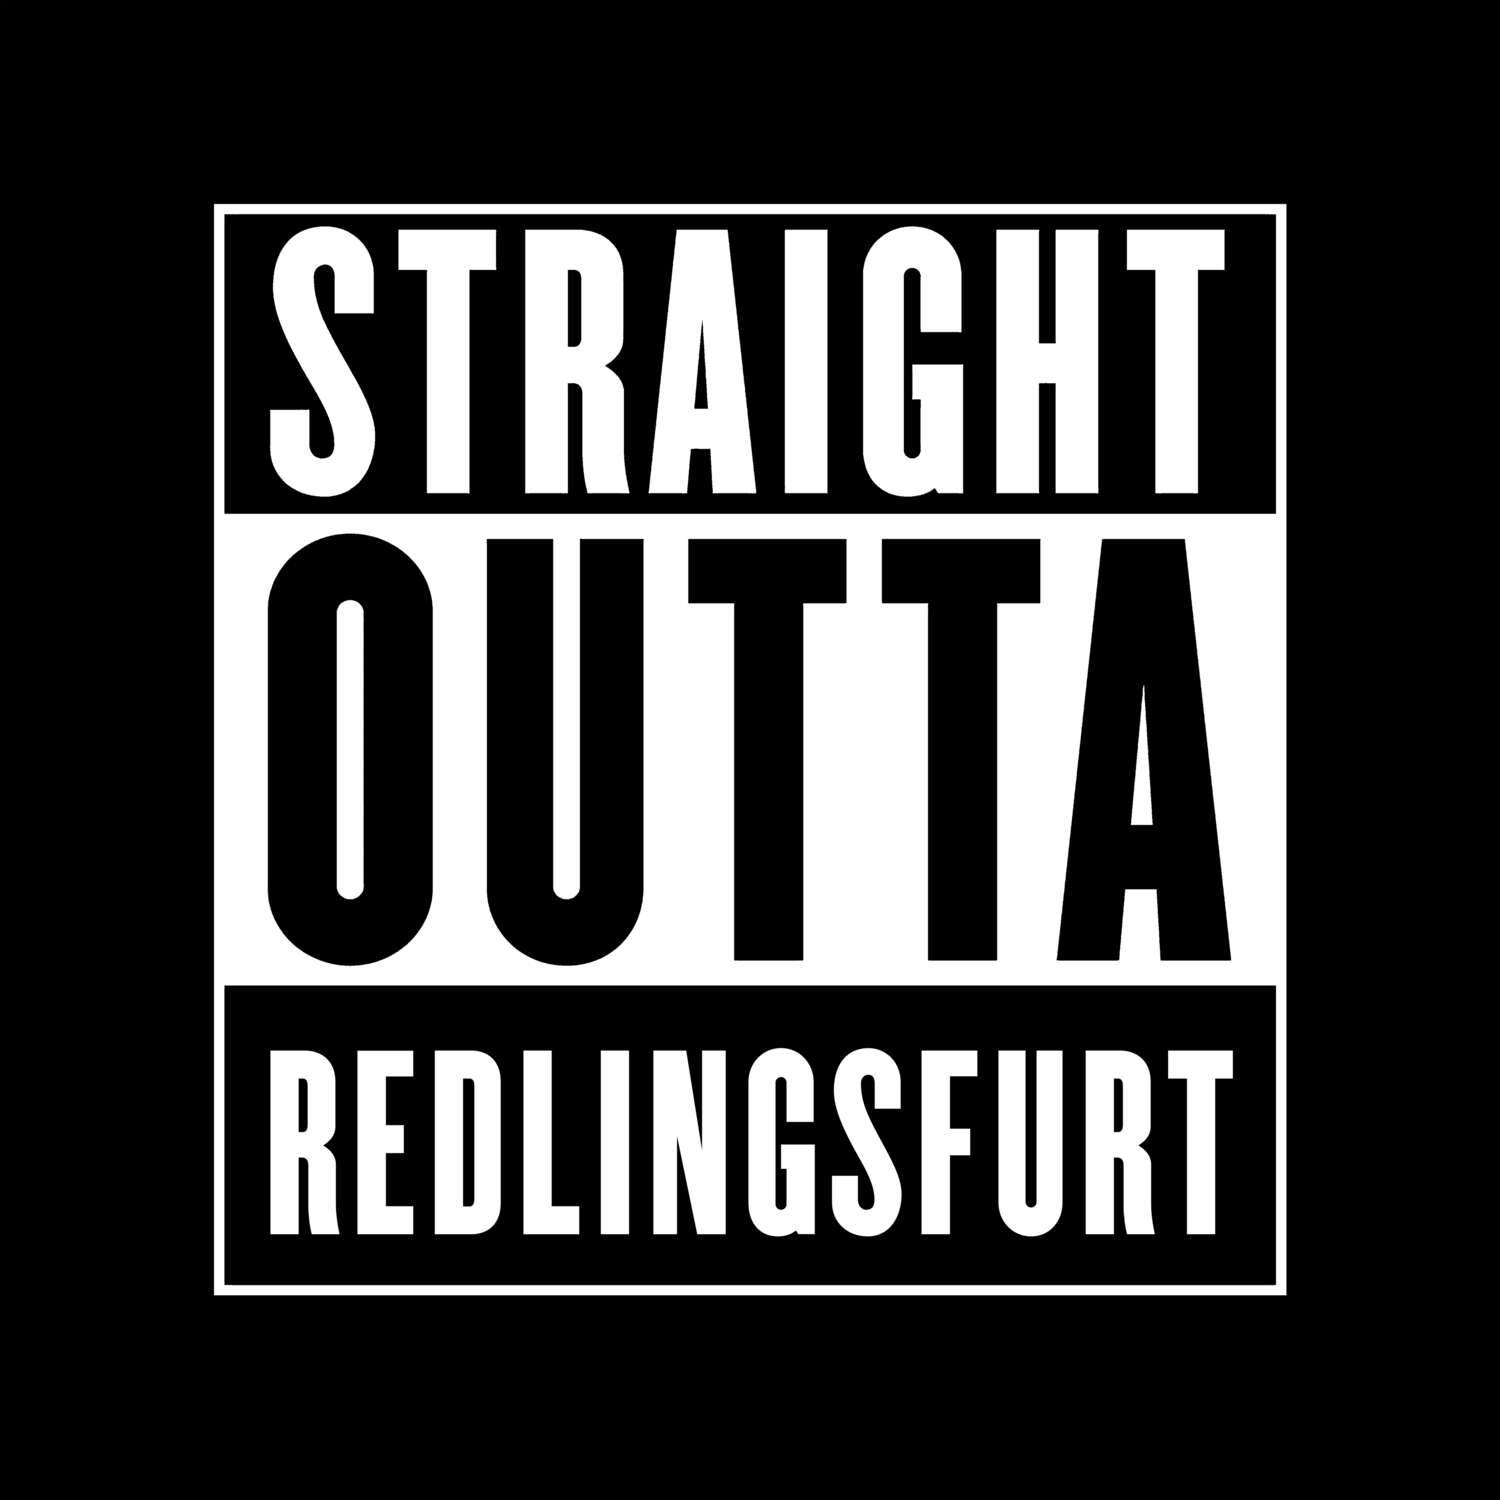 Redlingsfurt T-Shirt »Straight Outta«